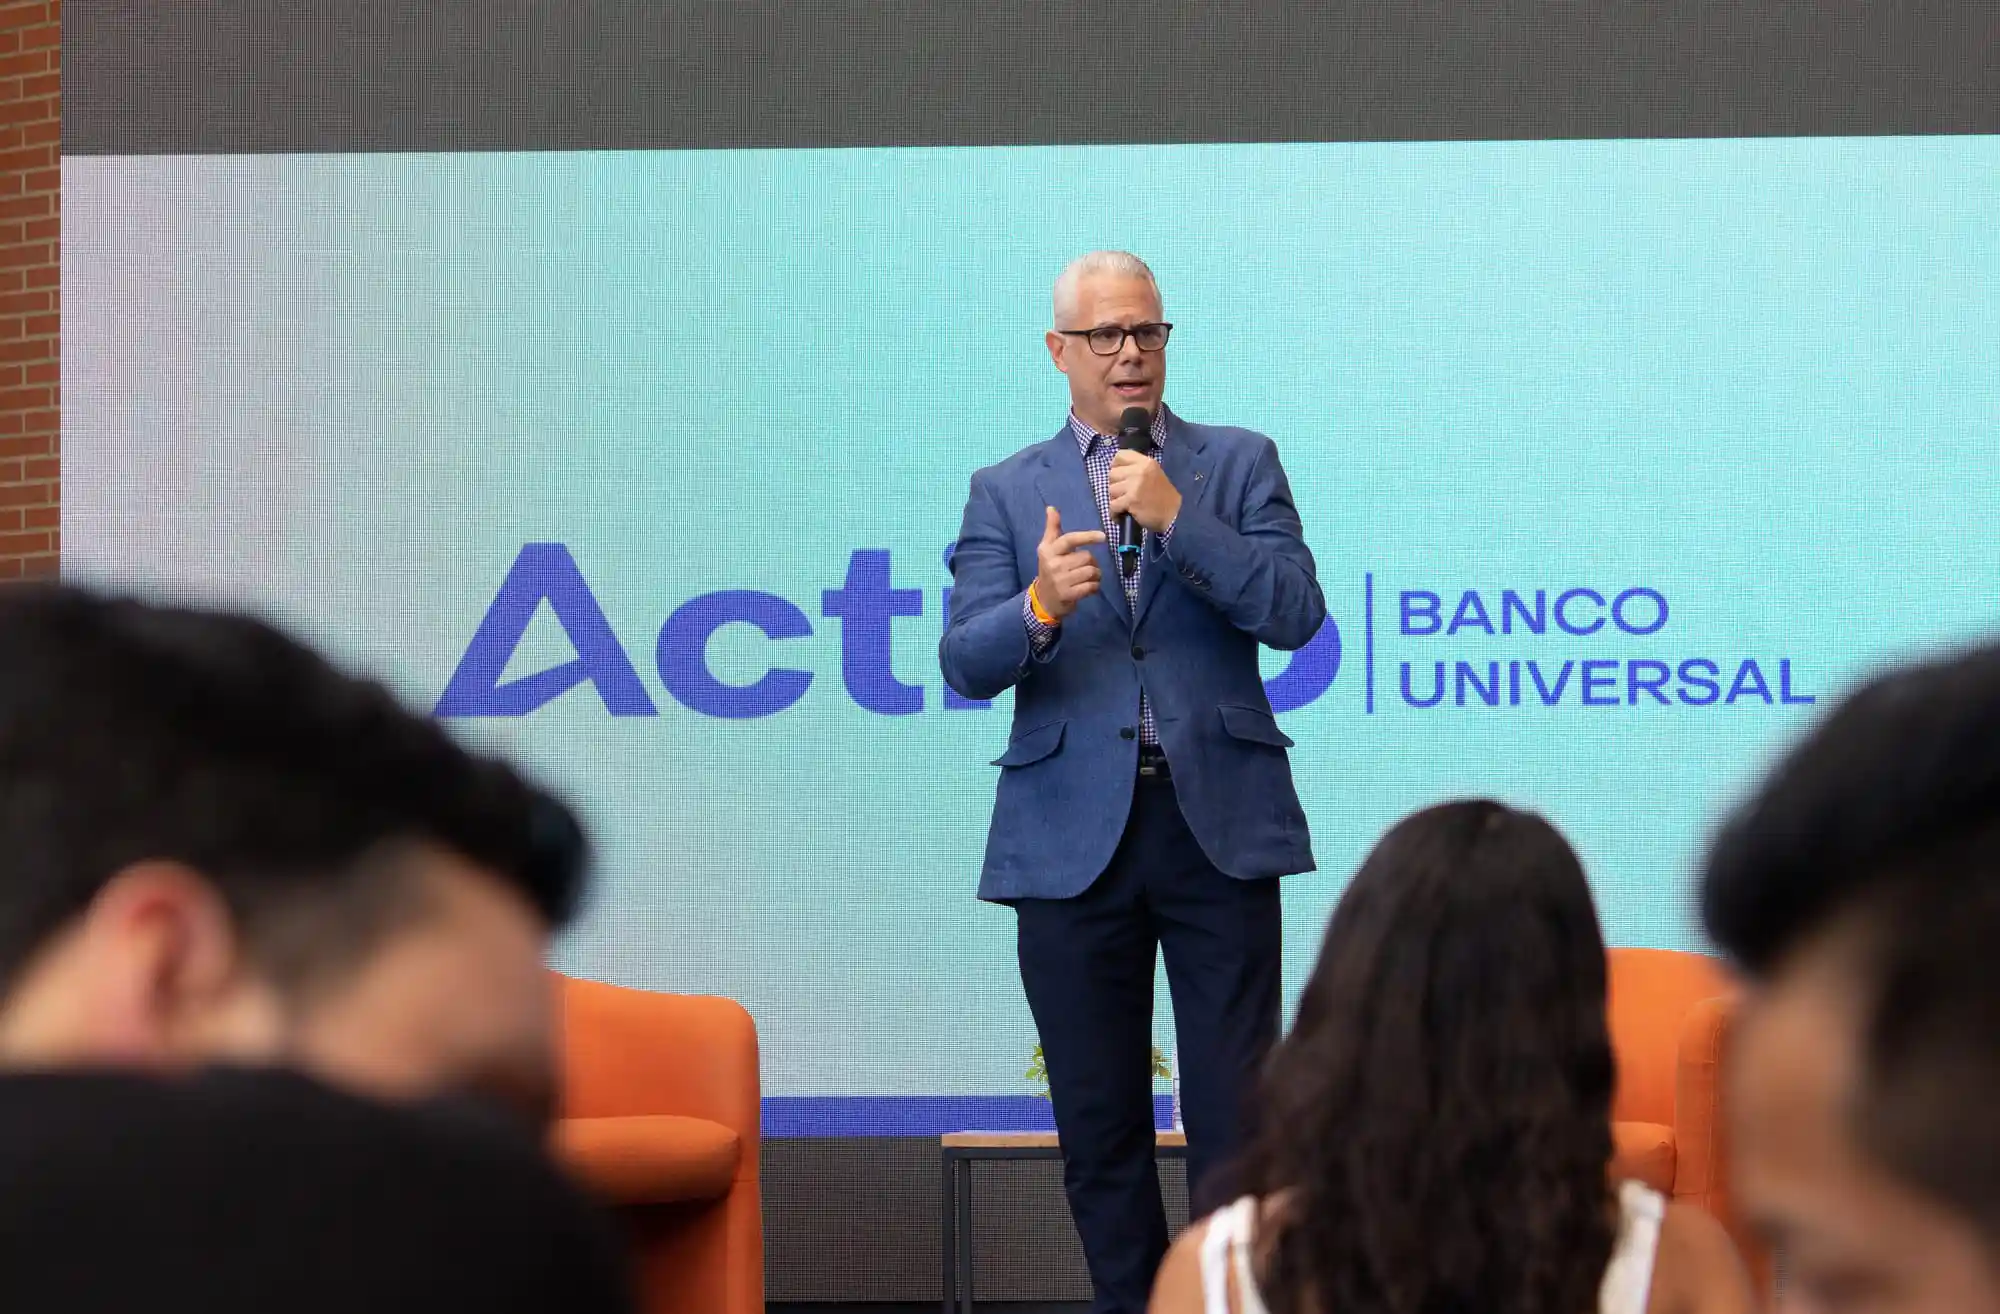 Diego Ricol de Banco Activo durante el anuncio.